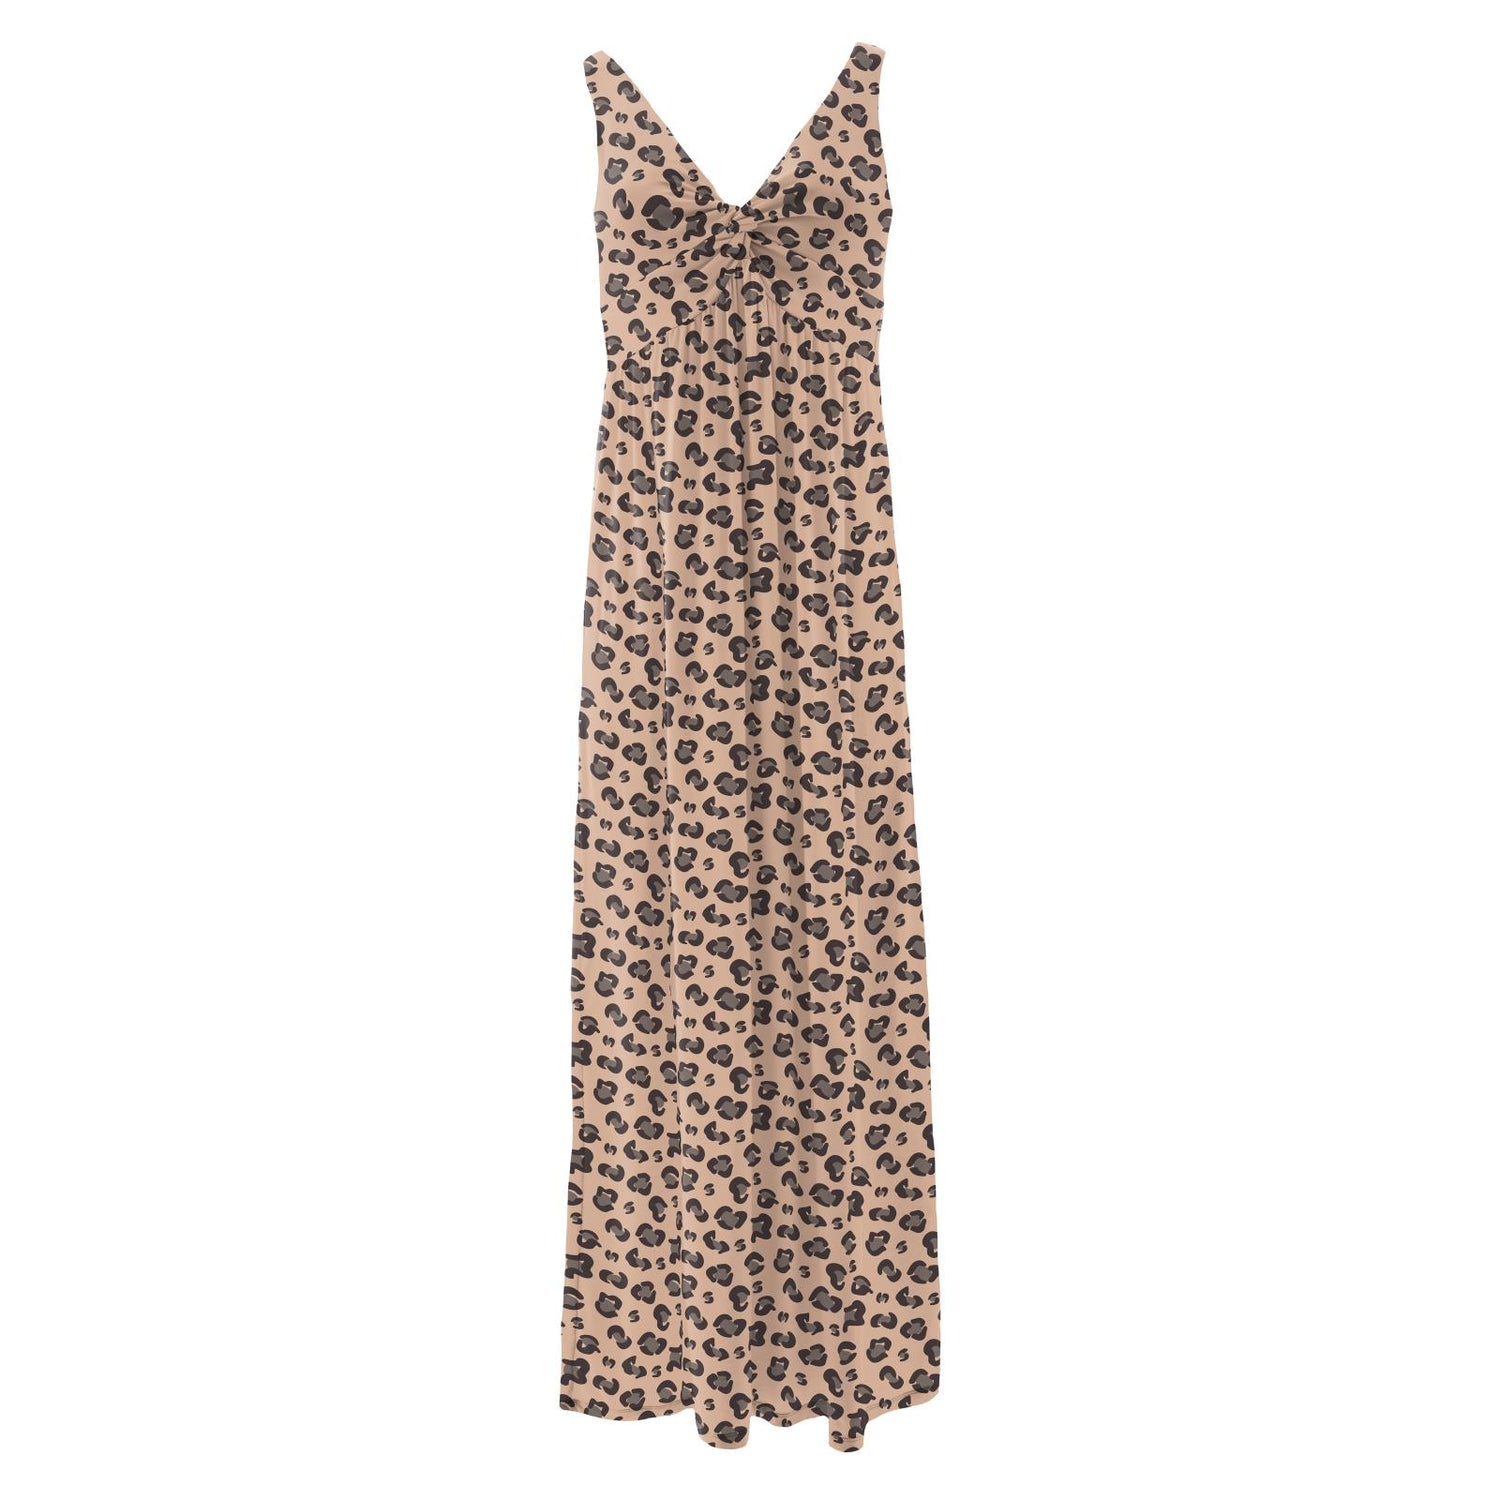 Women's Print Simple Twist Nightgown in Suede Cheetah Print